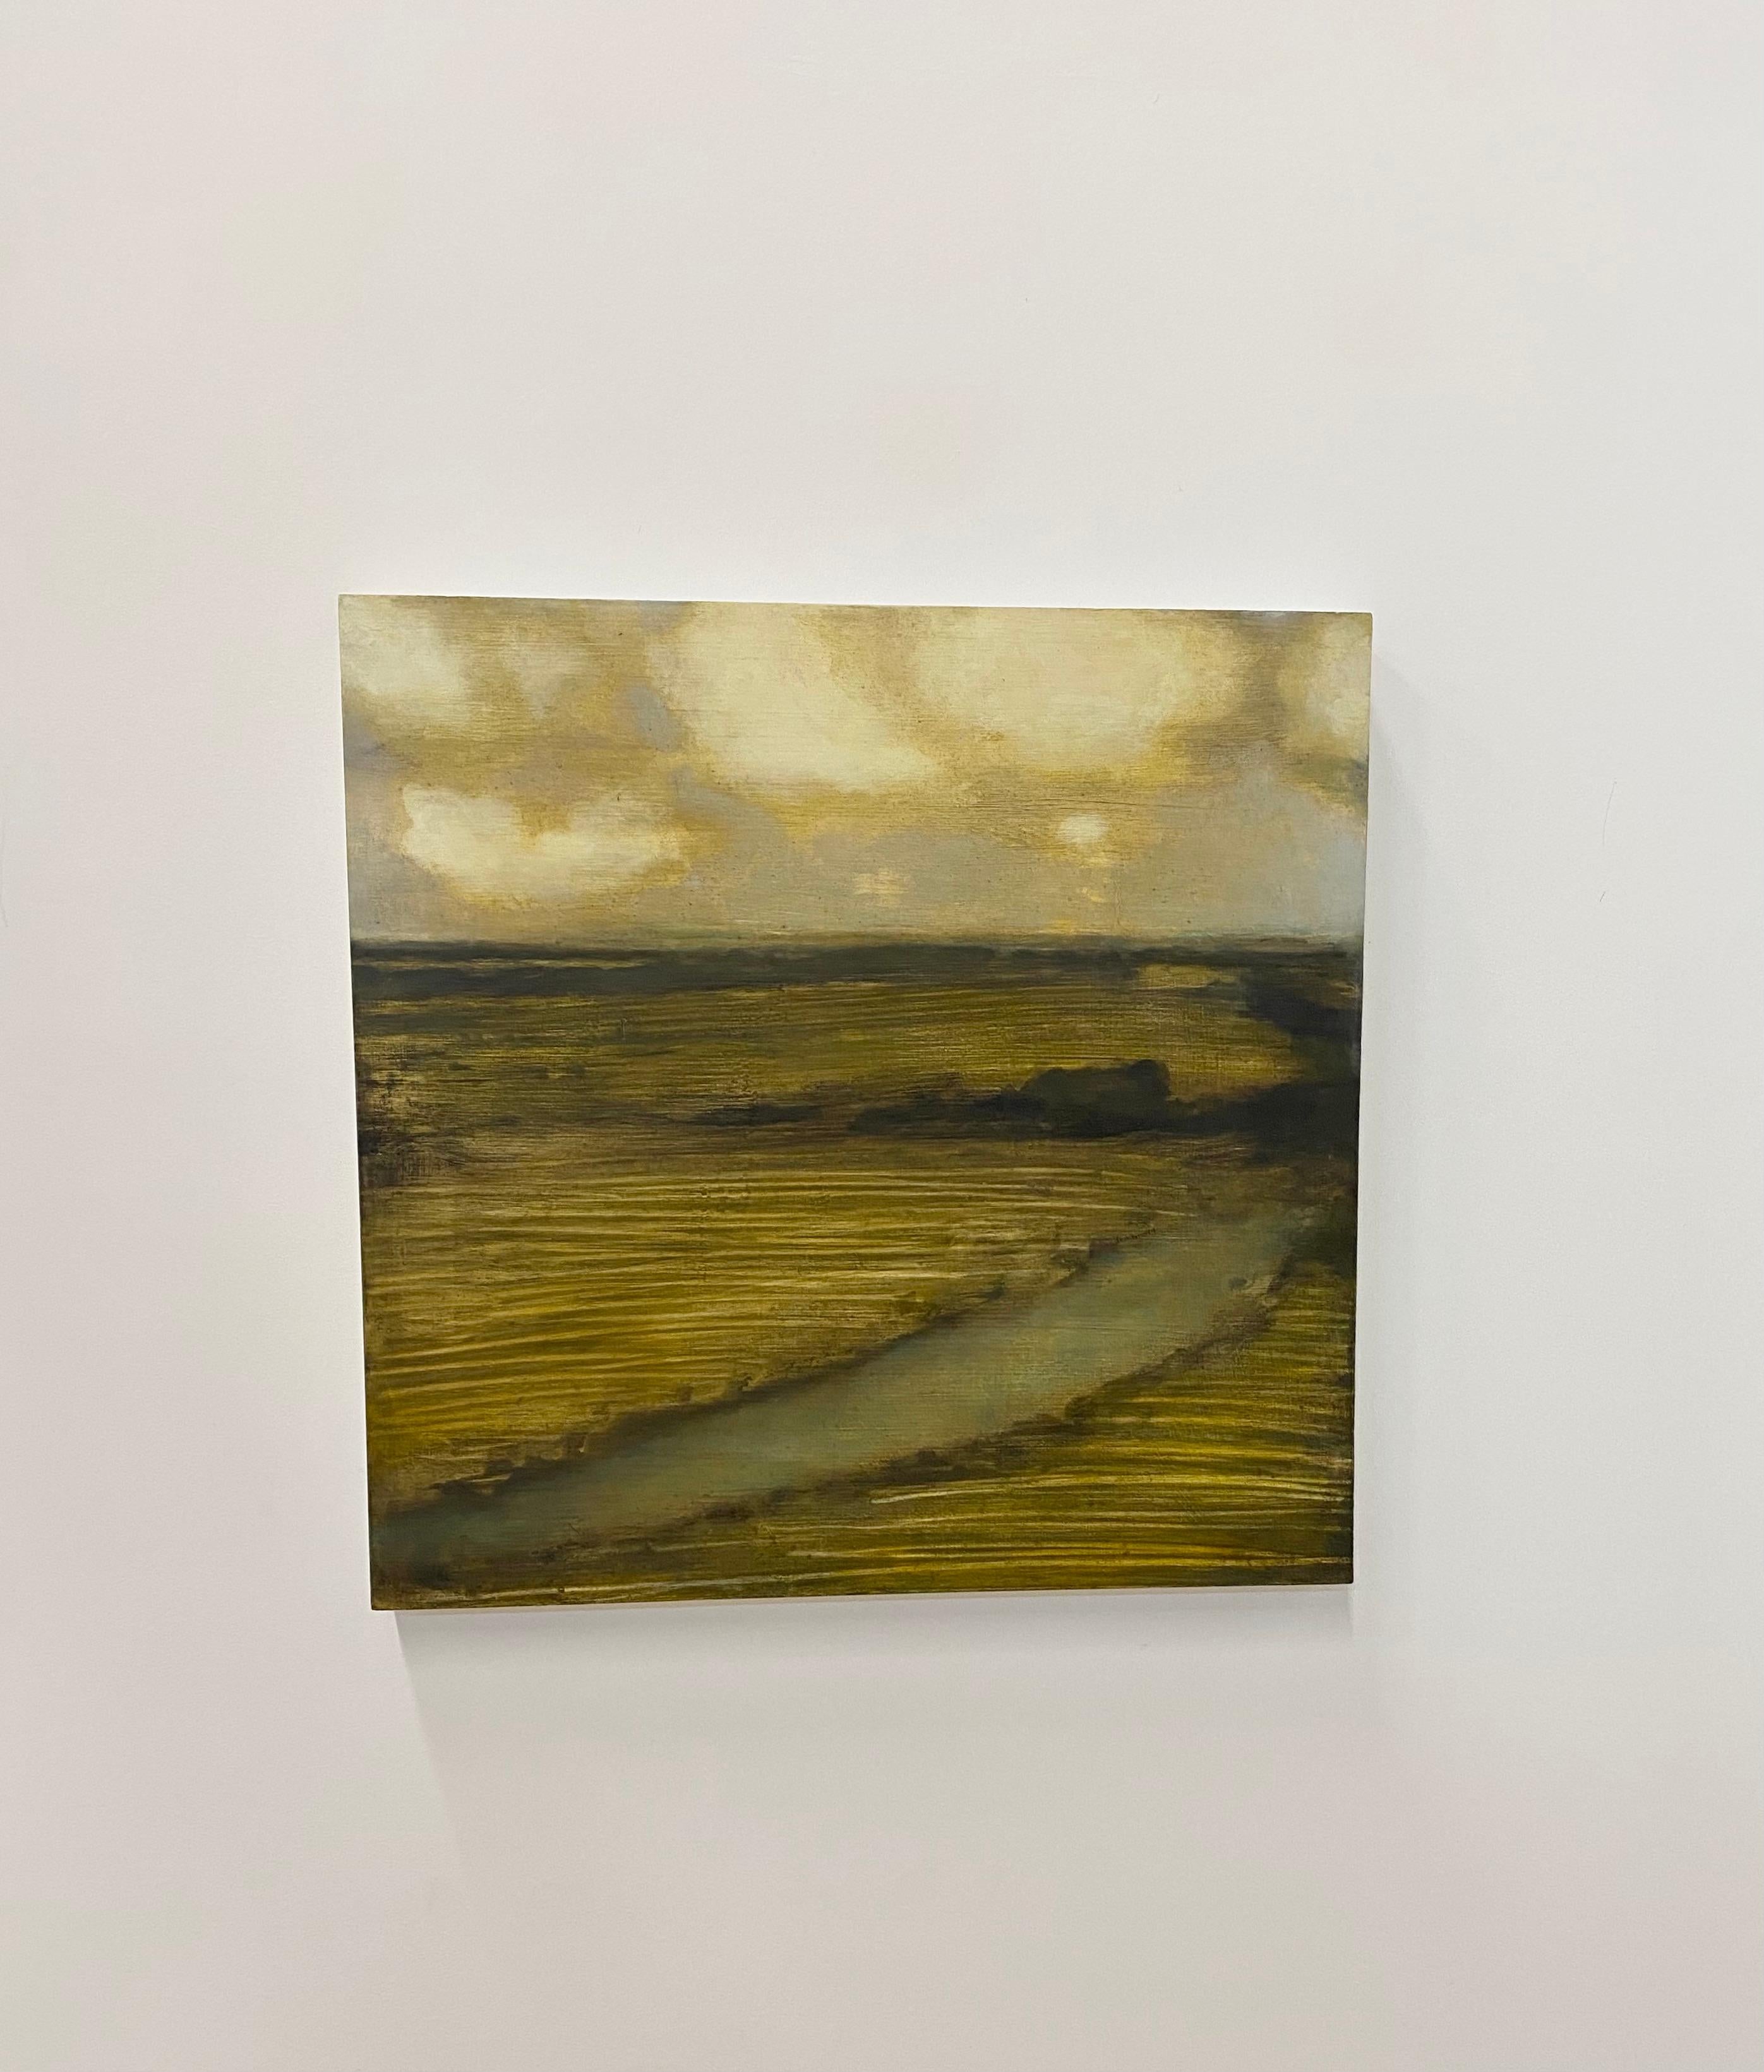 Peinture de terrain avec ruisseau, paysage, nuages dorés et crème sur terrain brun - Painting de David Konigsberg